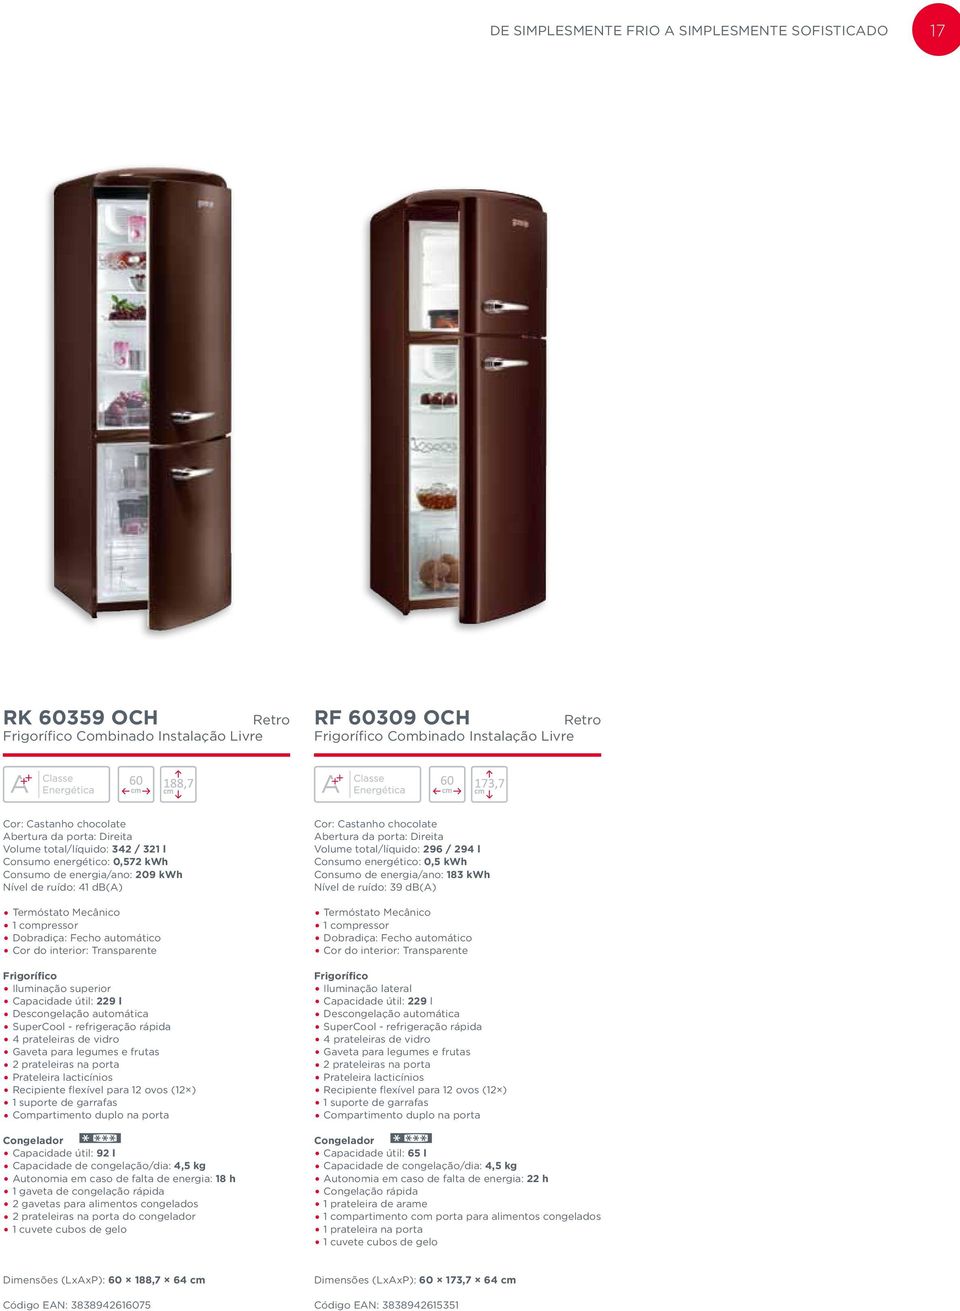 automática SuperCool - refrigeração rápida 2 prateleiras na porta Compartimento duplo na porta Capacidade útil: 92 l Capacidade de congelação/dia: 4,5 kg Autonomia em caso de falta de energia: 18 h 1